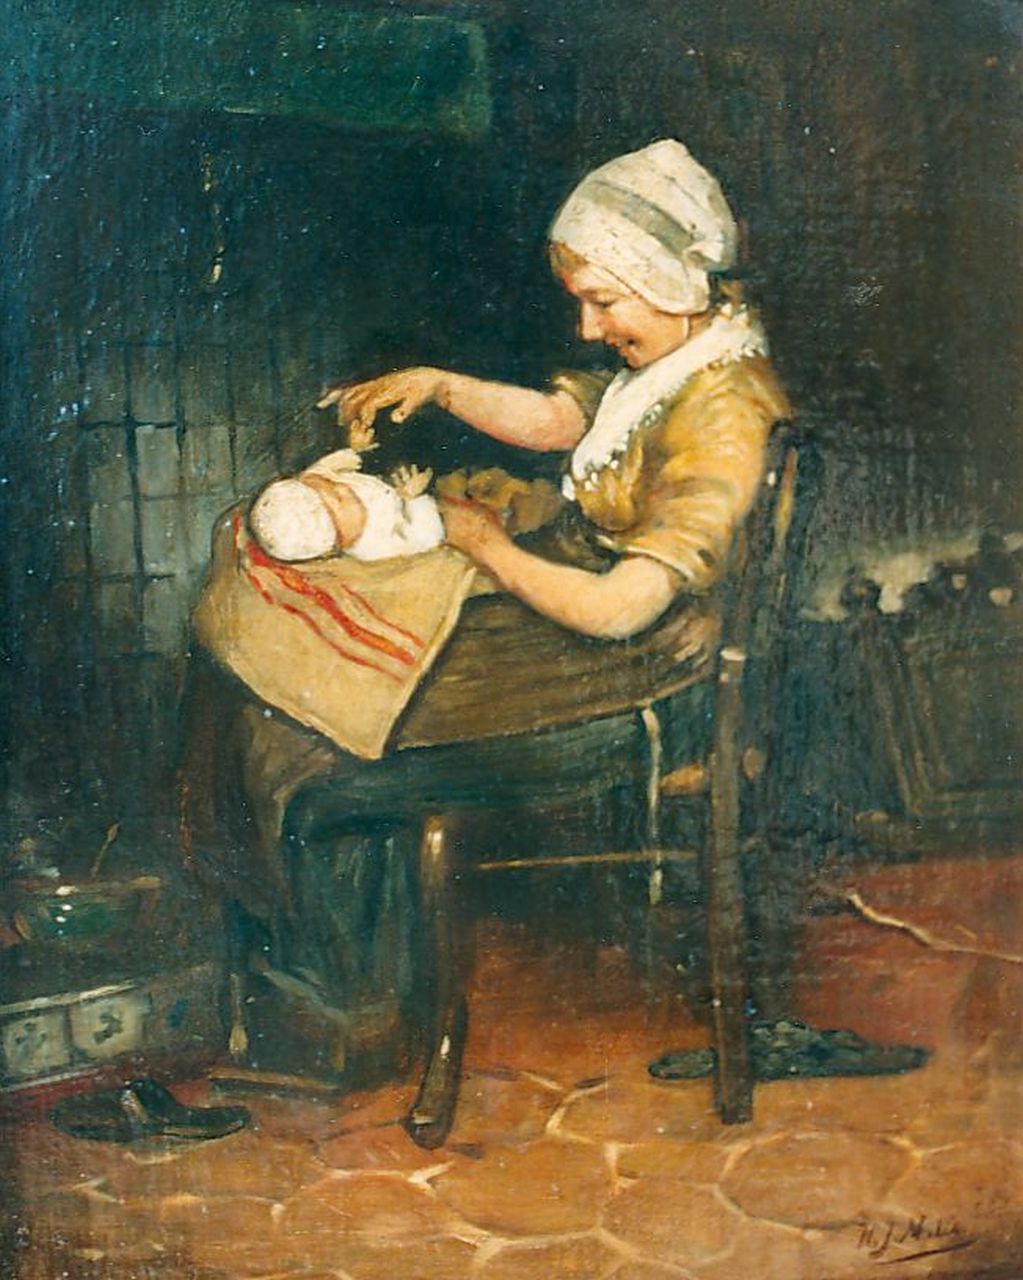 Mélis H.J.  | Henricus Joannes Mélis, Spelen met de baby, olieverf op doek 34,5 x 28,5 cm, gesigneerd linksonder